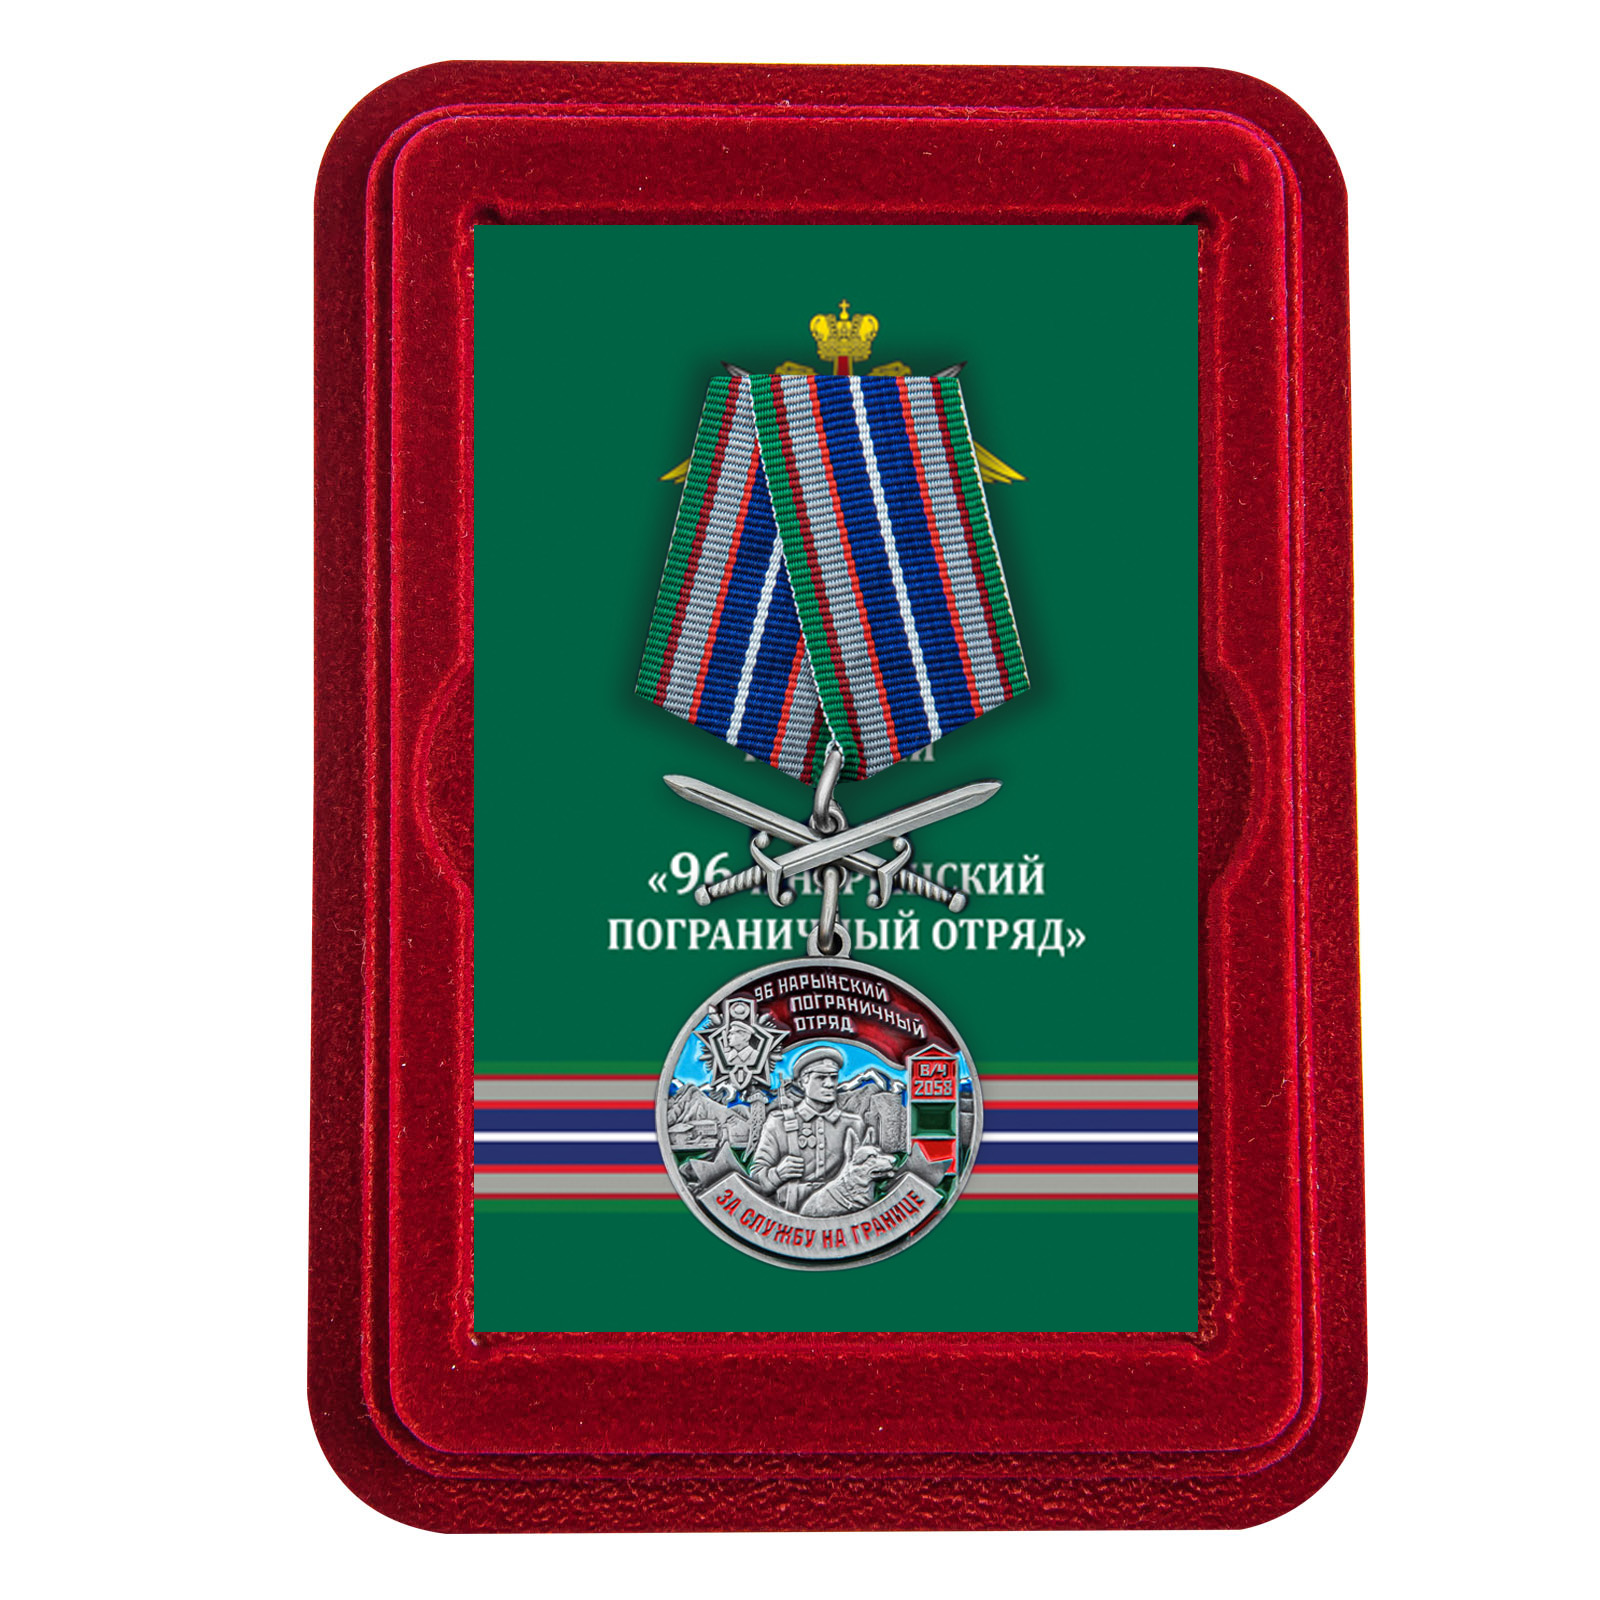 Купить медаль За службу в Нарынском пограничном отряде с мечами выгодно